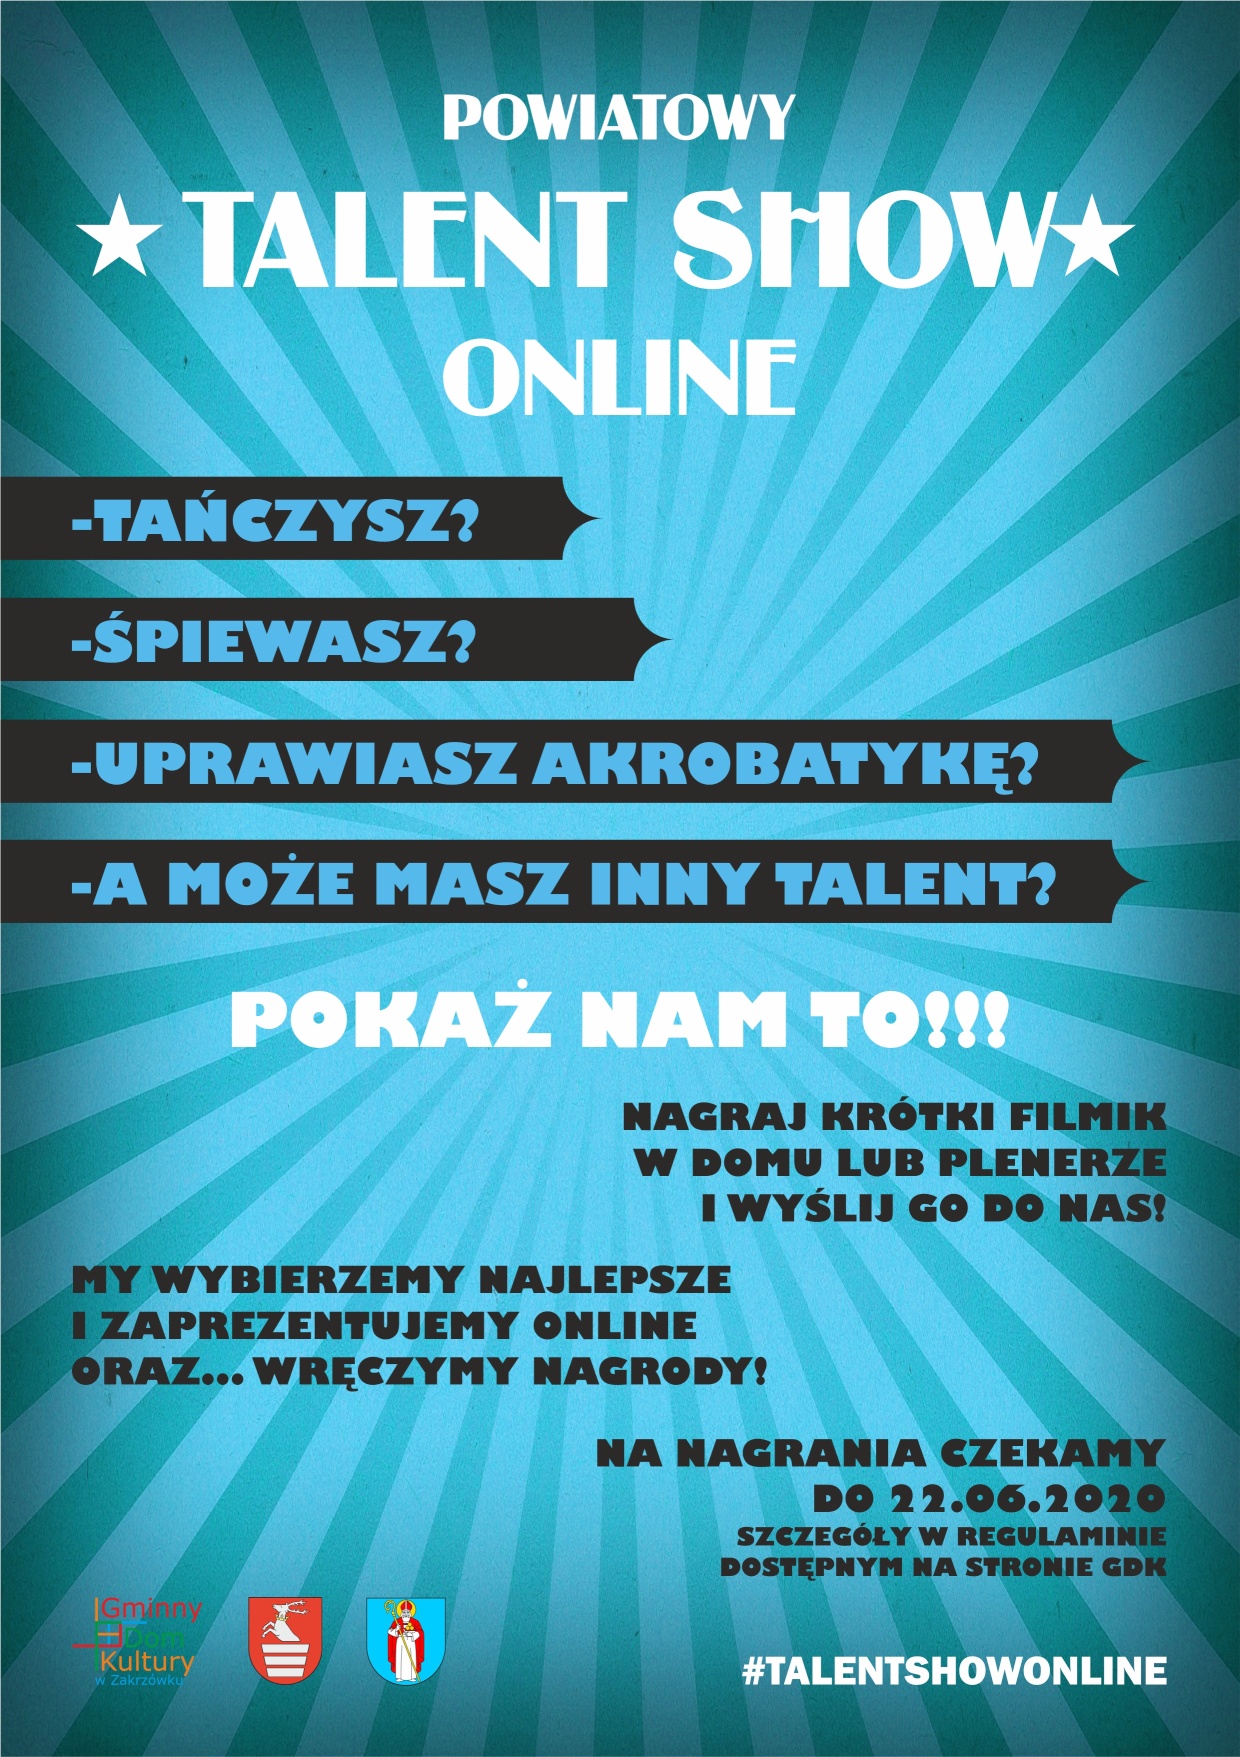 Powiatowy “Talent Show” Online